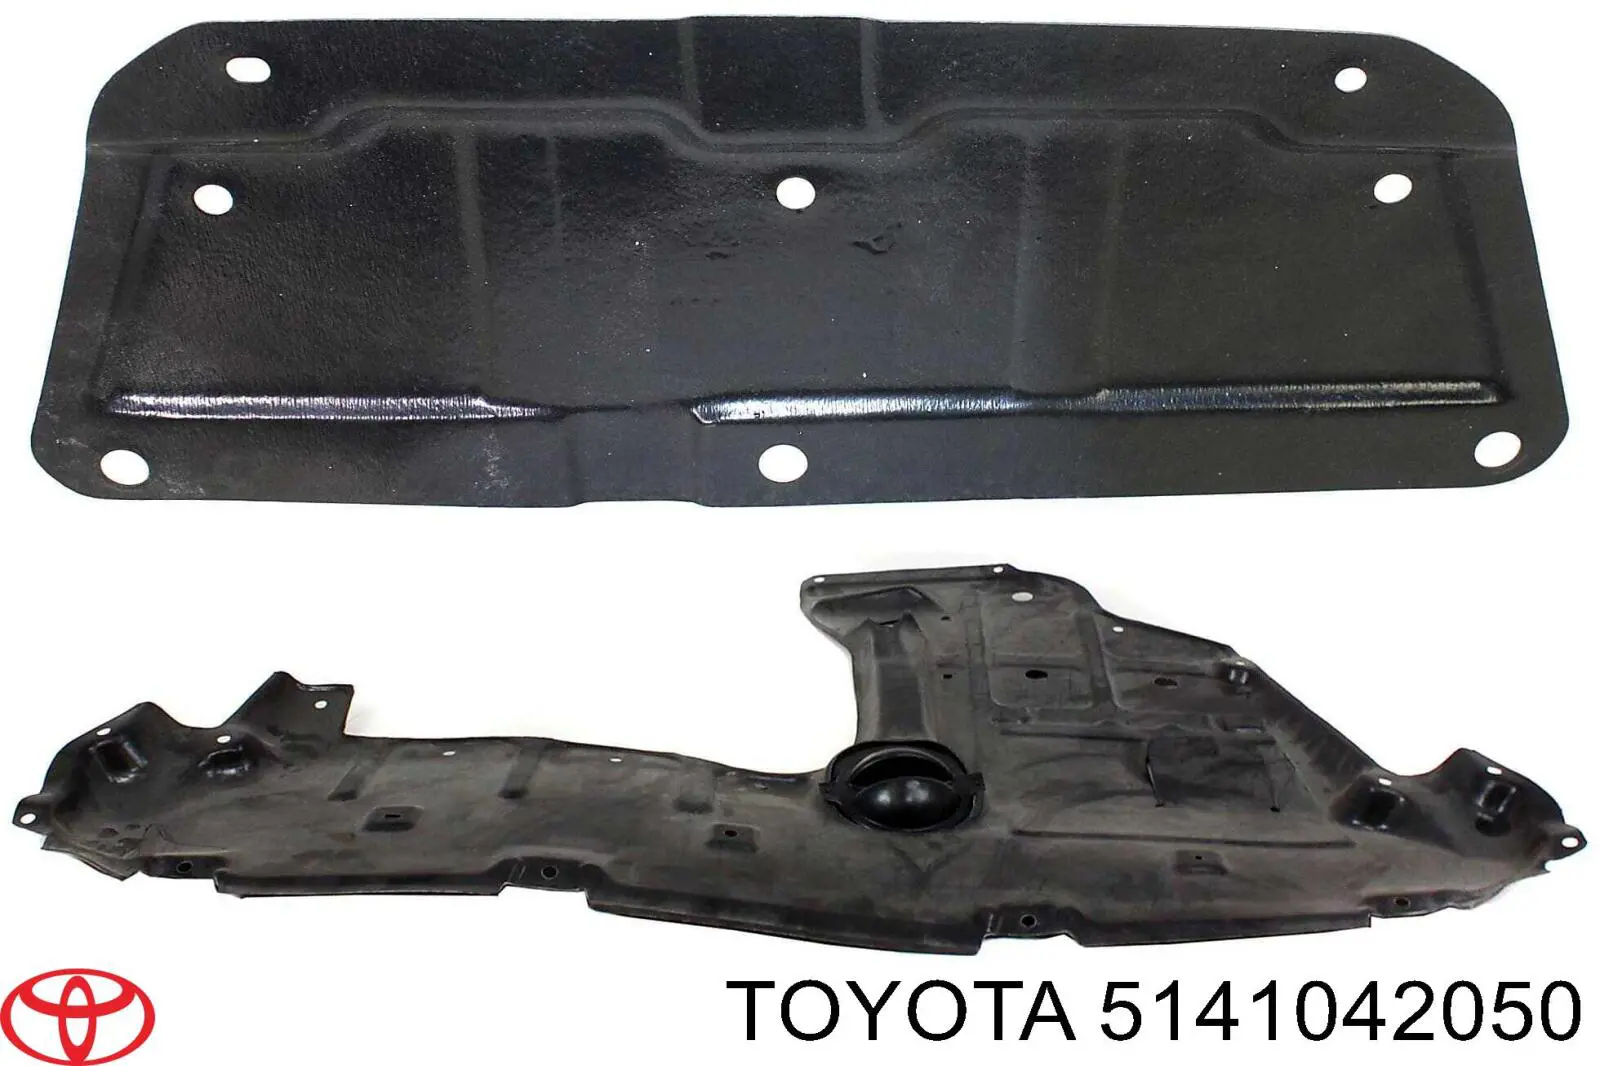 5141042020 Toyota захист двигуна, піддона (моторного відсіку)